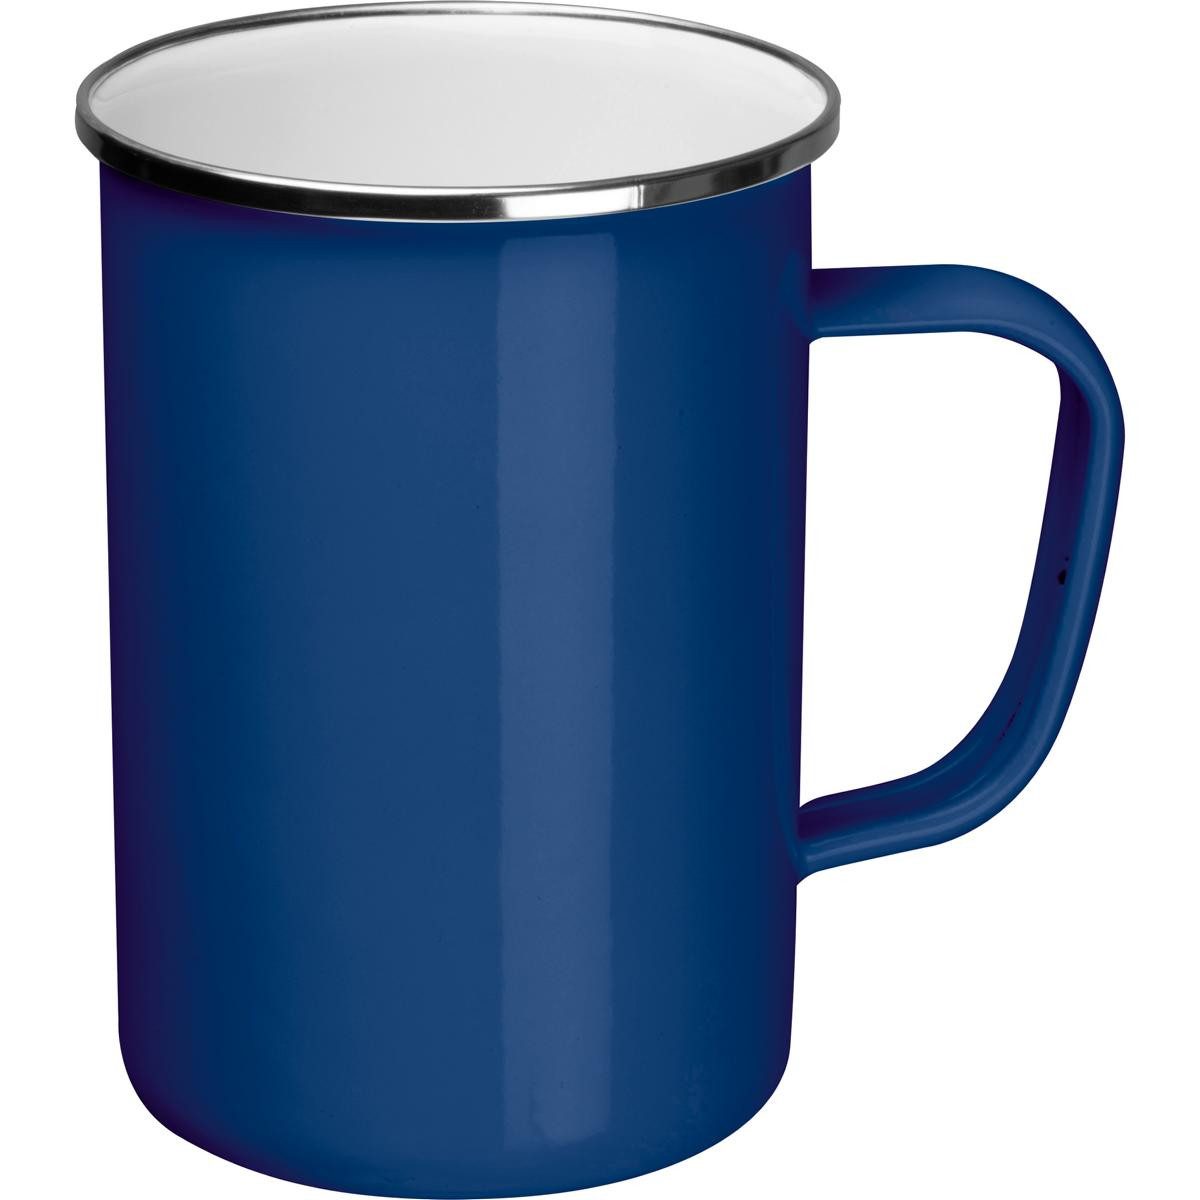 Livepac Office Tasse Emaille Tasse / Füllvermögen: 550ml / Farbe: blau